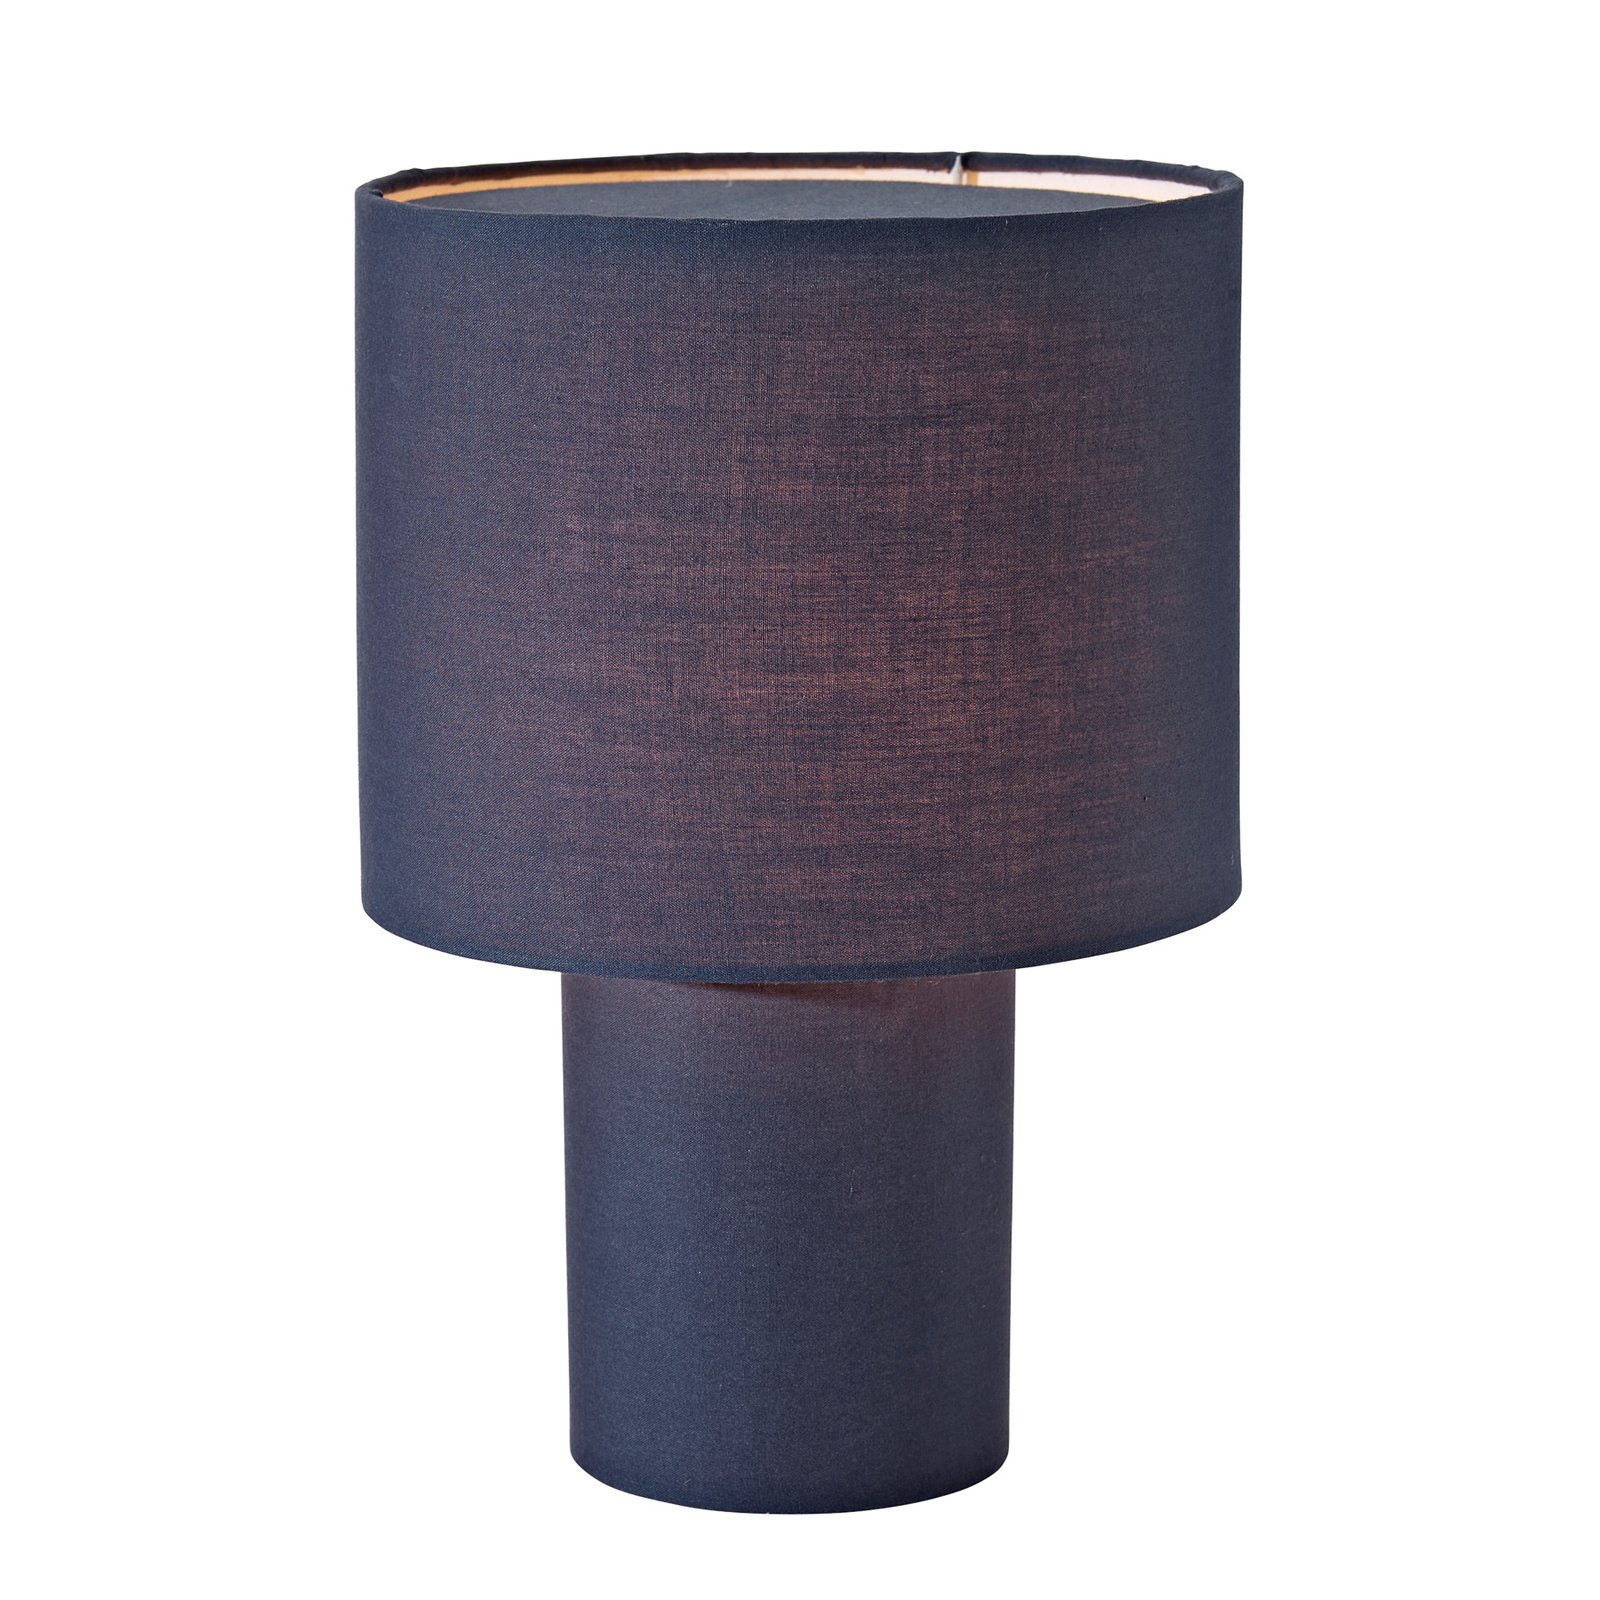 PR Home Leah lampe de table coton hauteur 28cm bleu